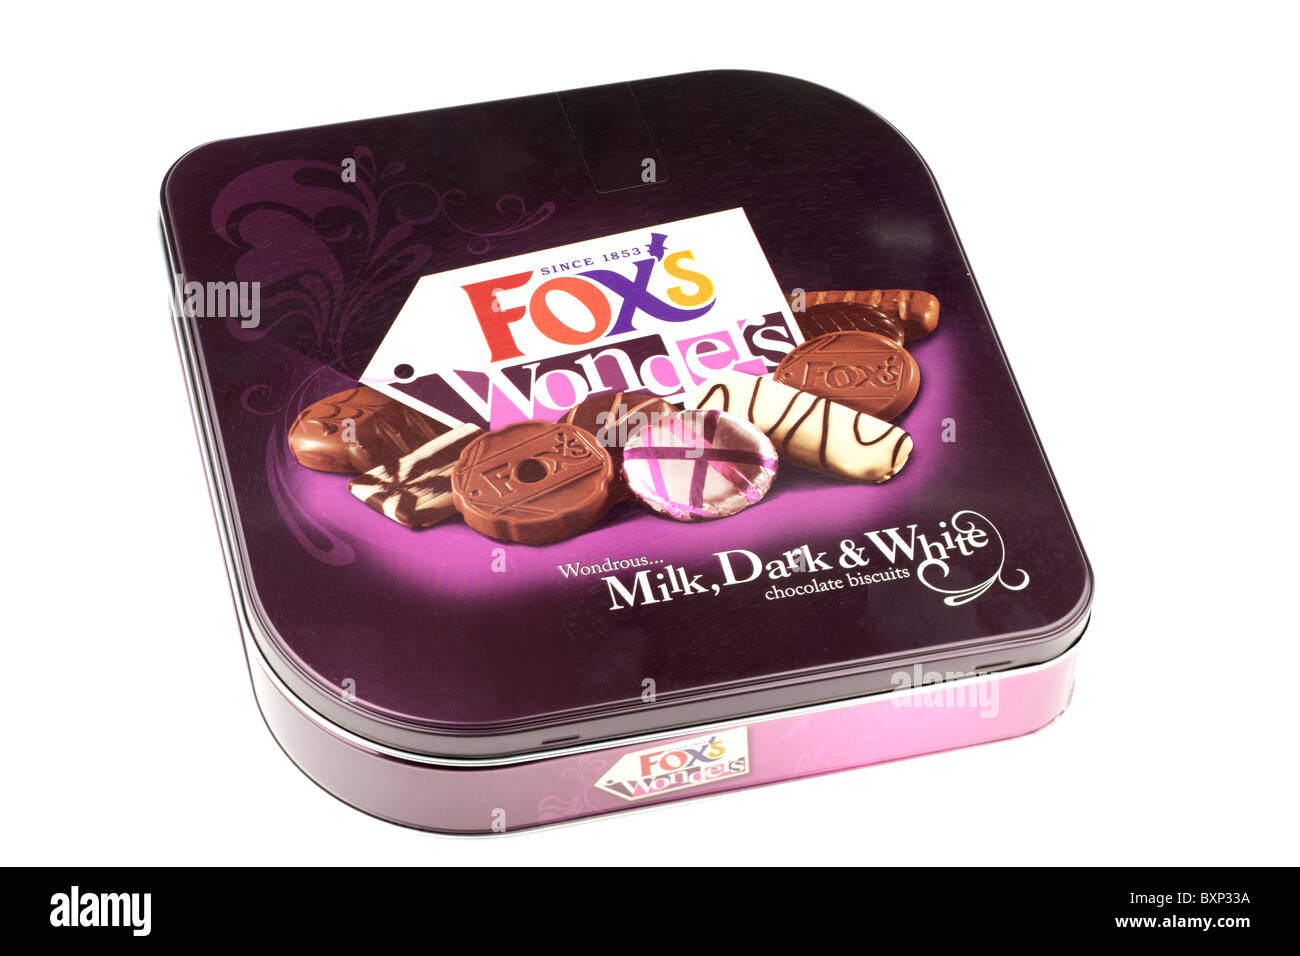 Caja de lata de leche Foxs maravillas maravillosas galletas de chocolate blanco y negro Foto de stock